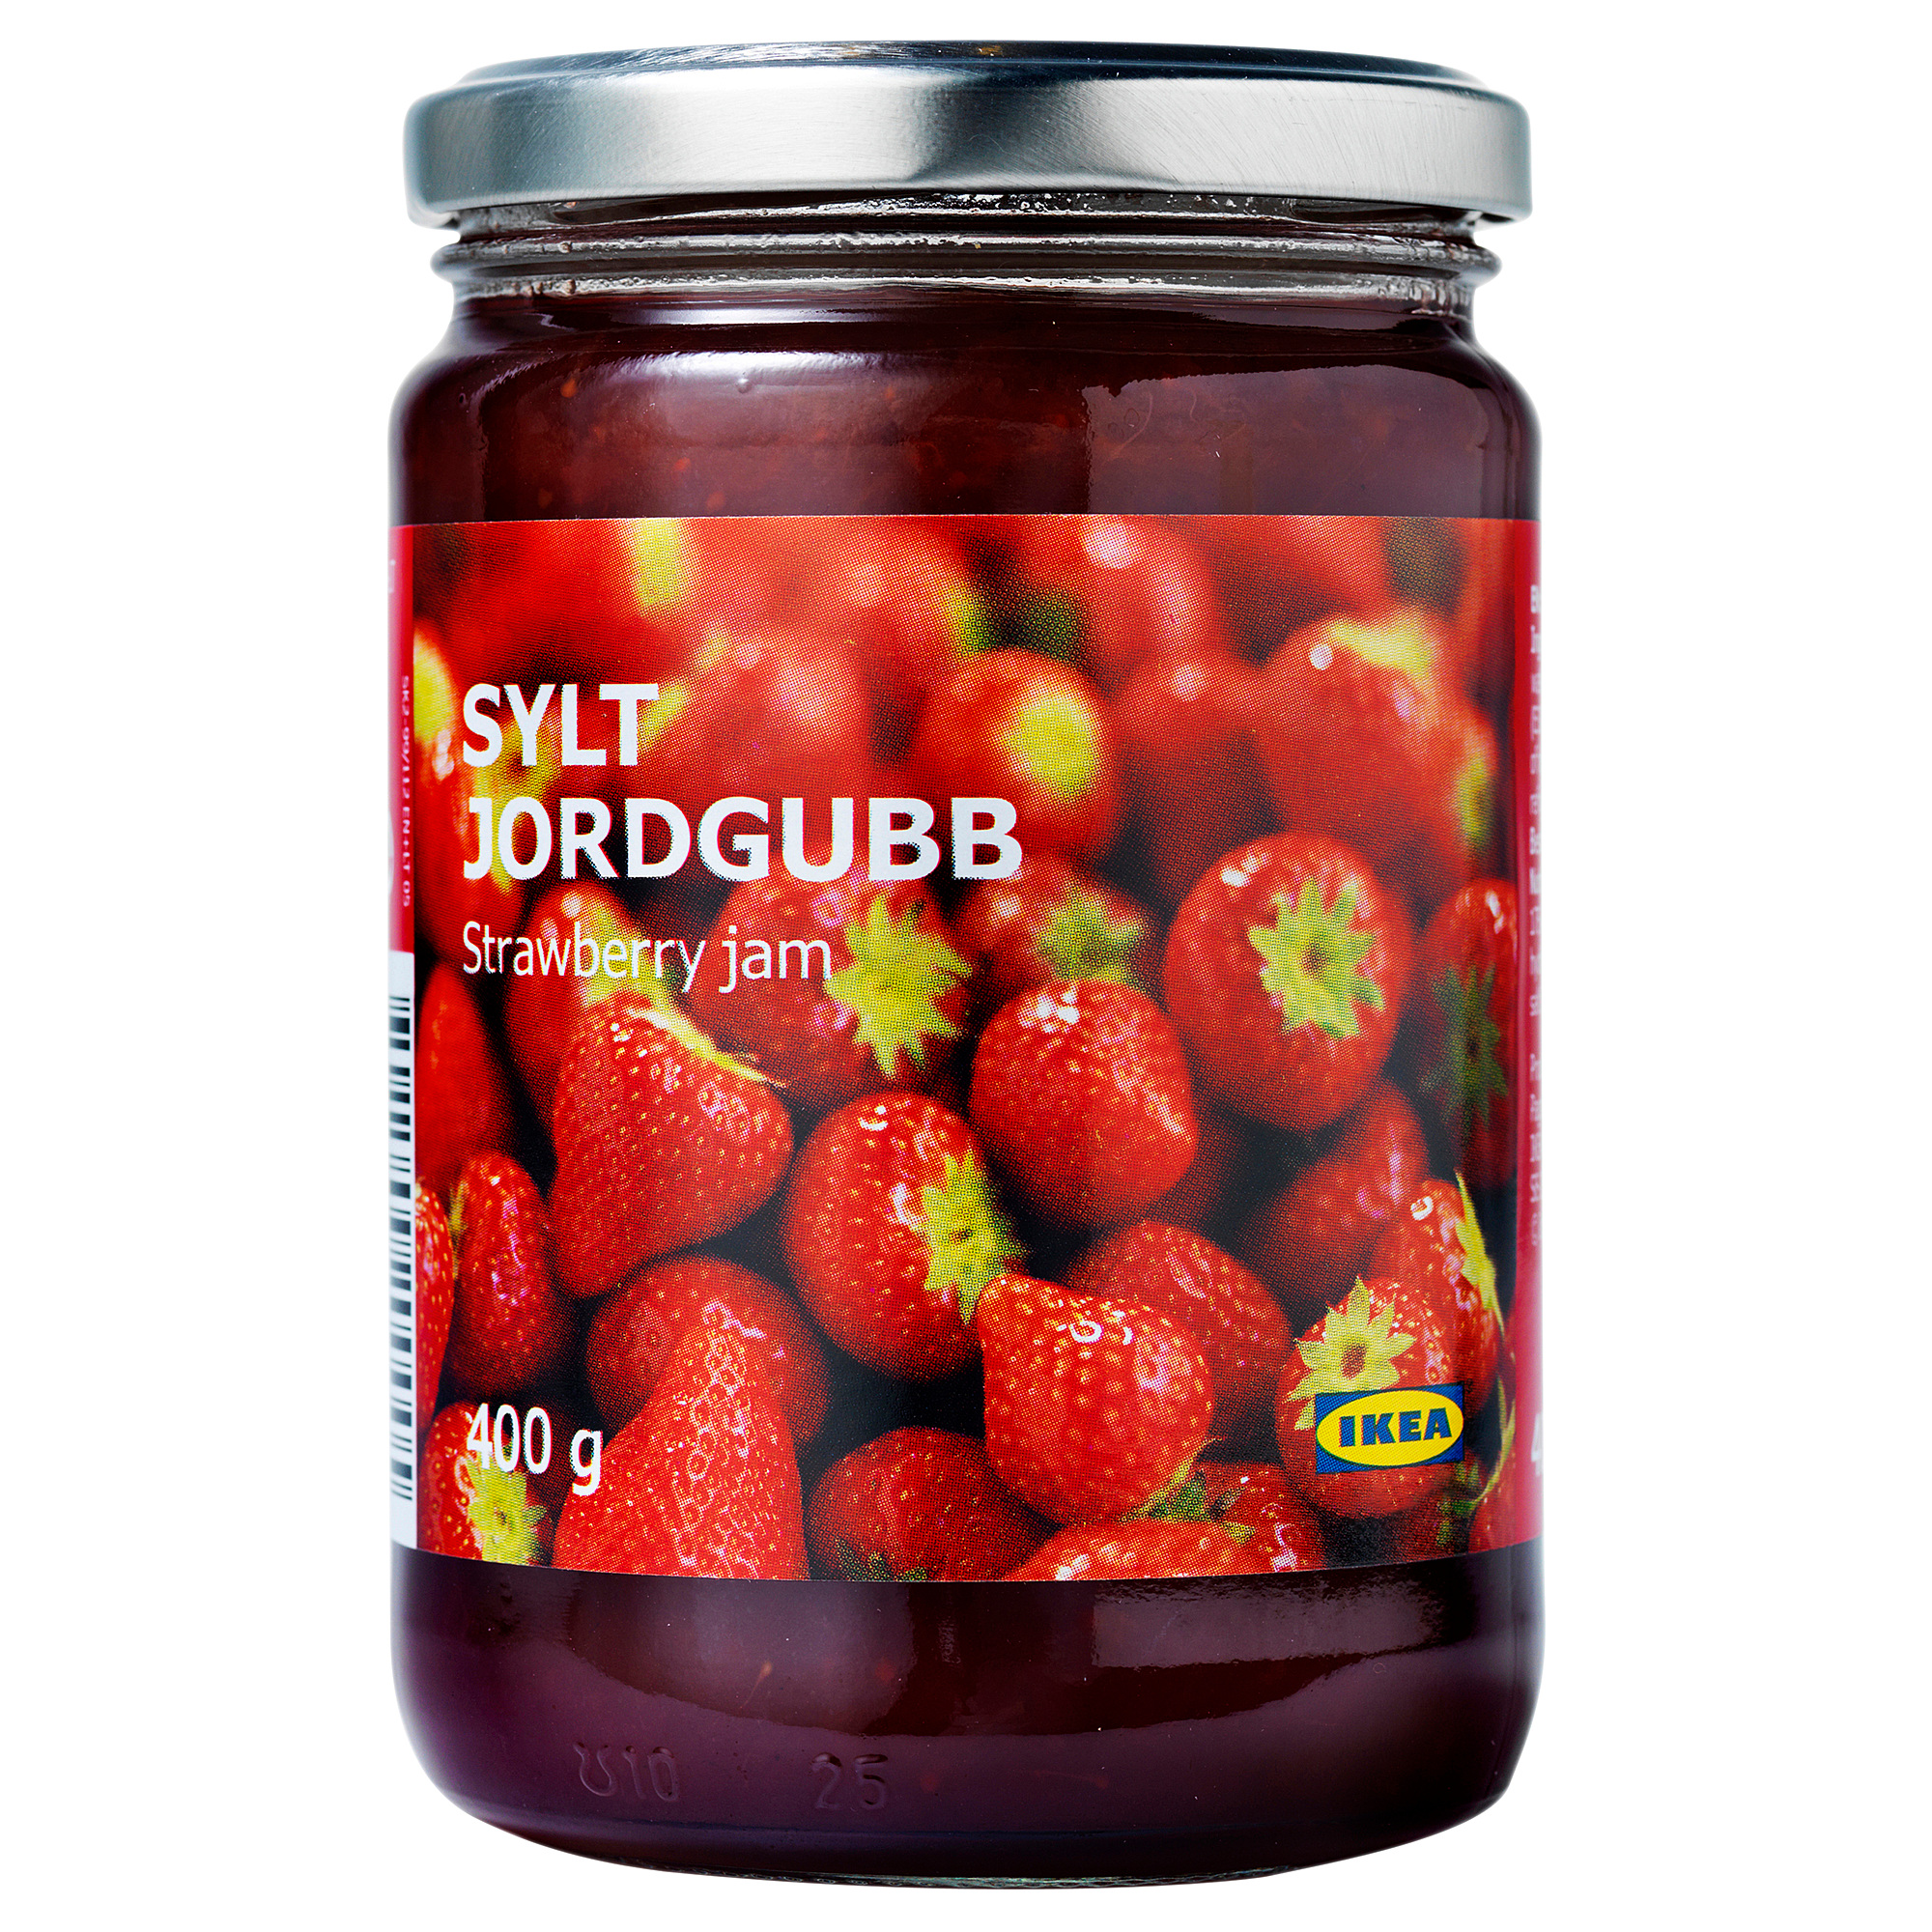 SYLT JORDGUBB strawberry jam